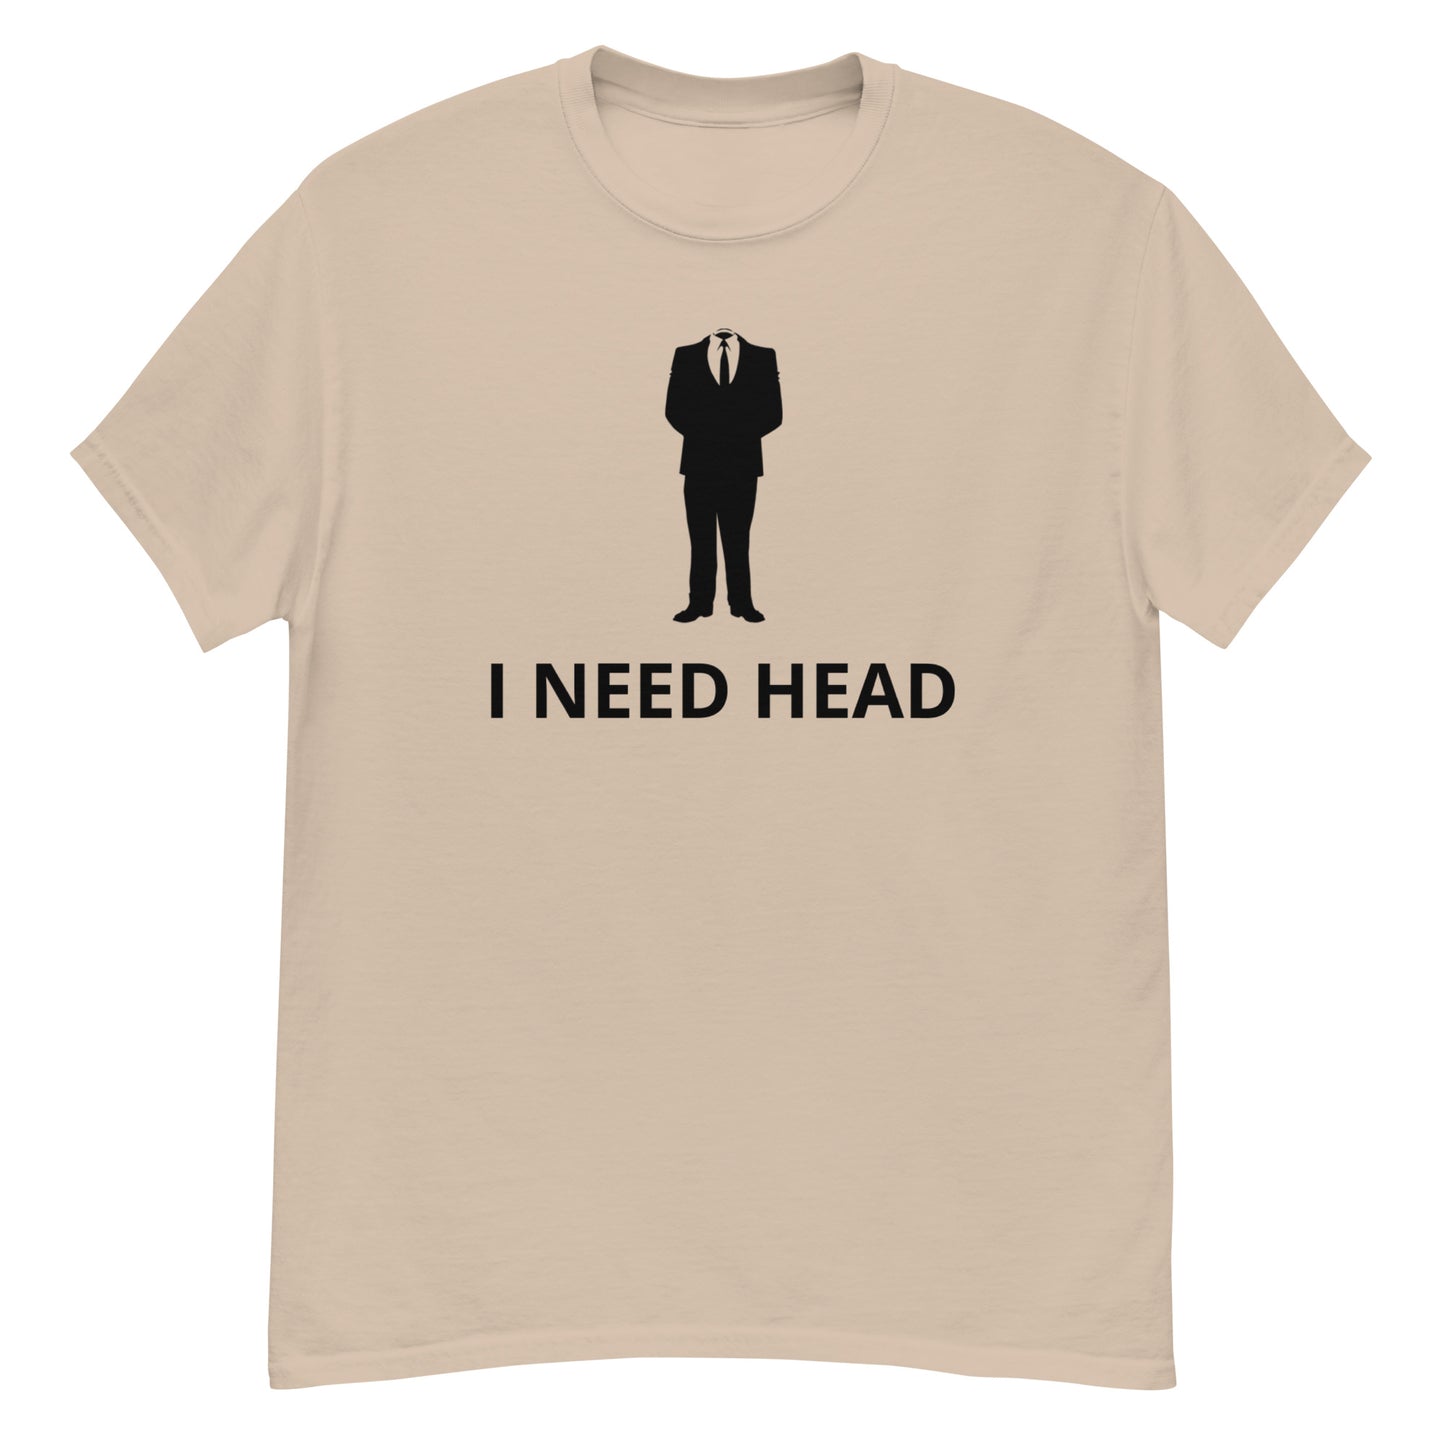 I NEED HEAD